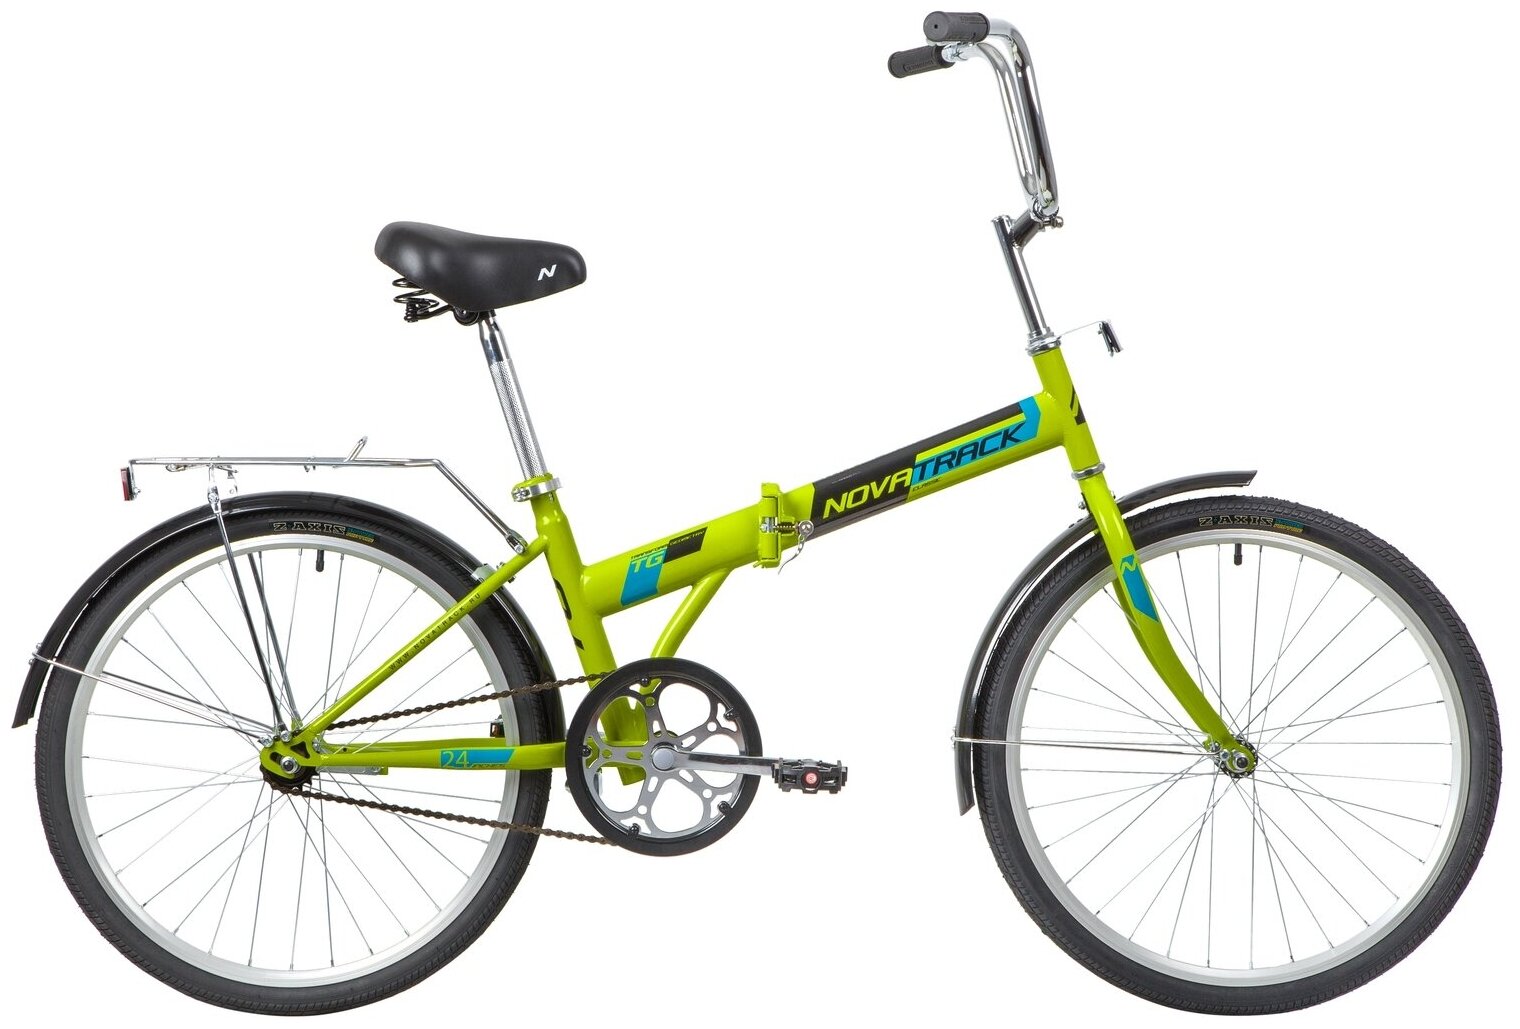 Велосипед NOVATRACK 24" складной, зеленый, тормоз ножной, багажник, крылья